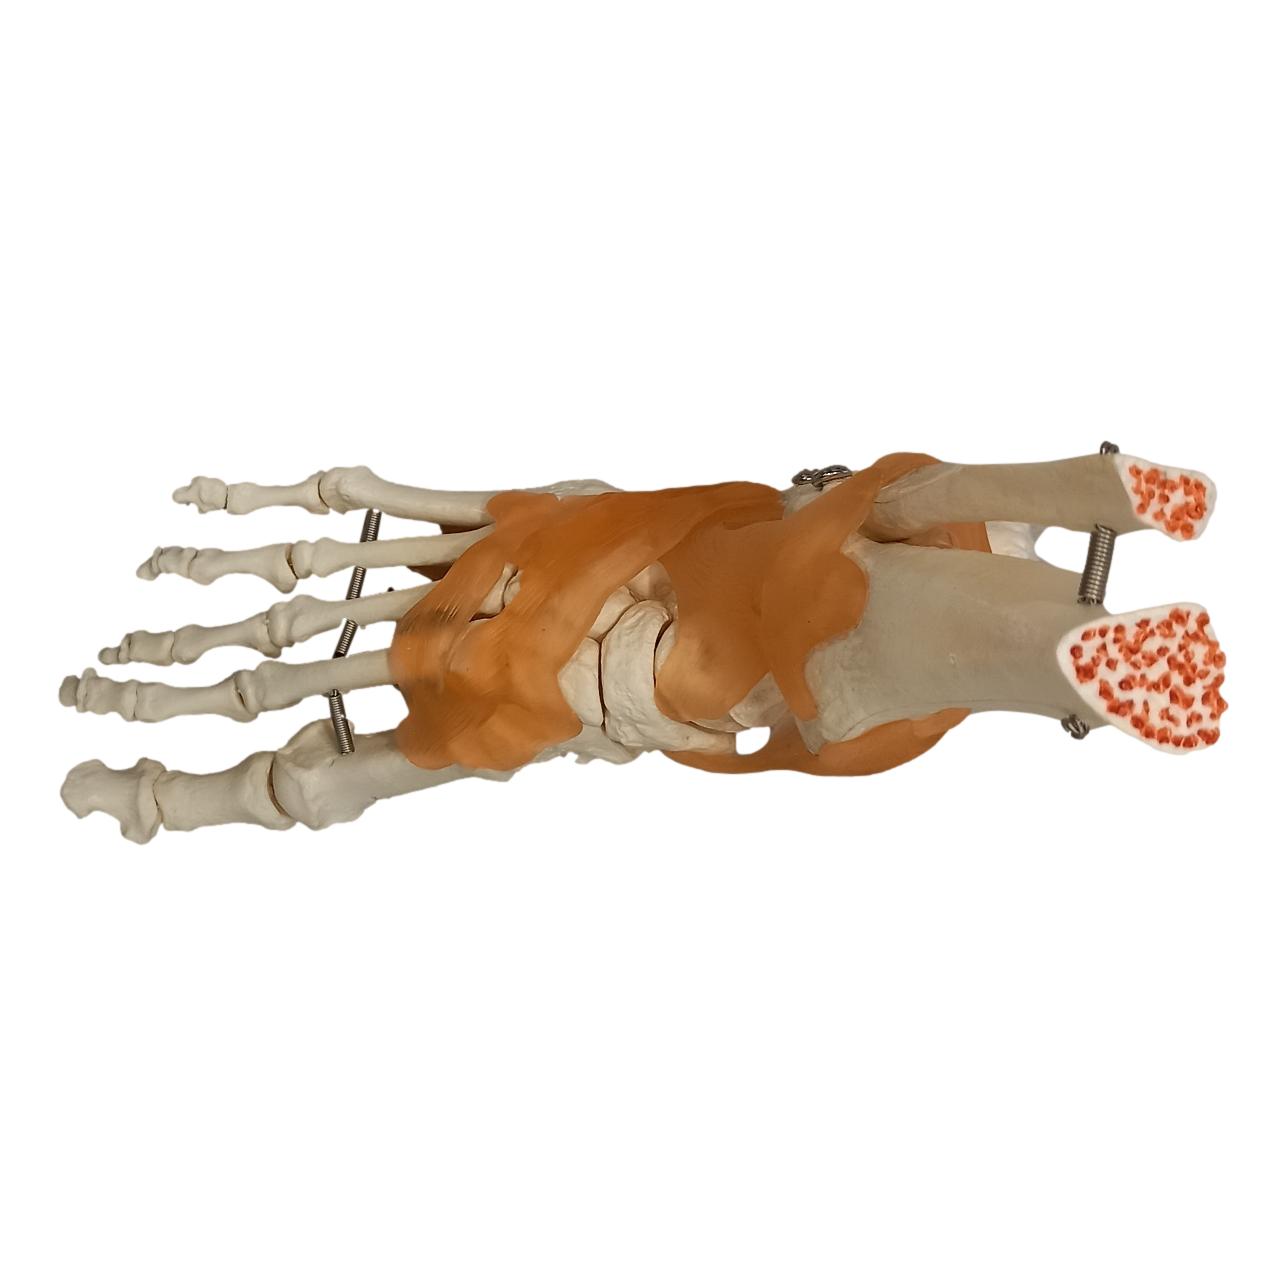 Squelette du pied sur base